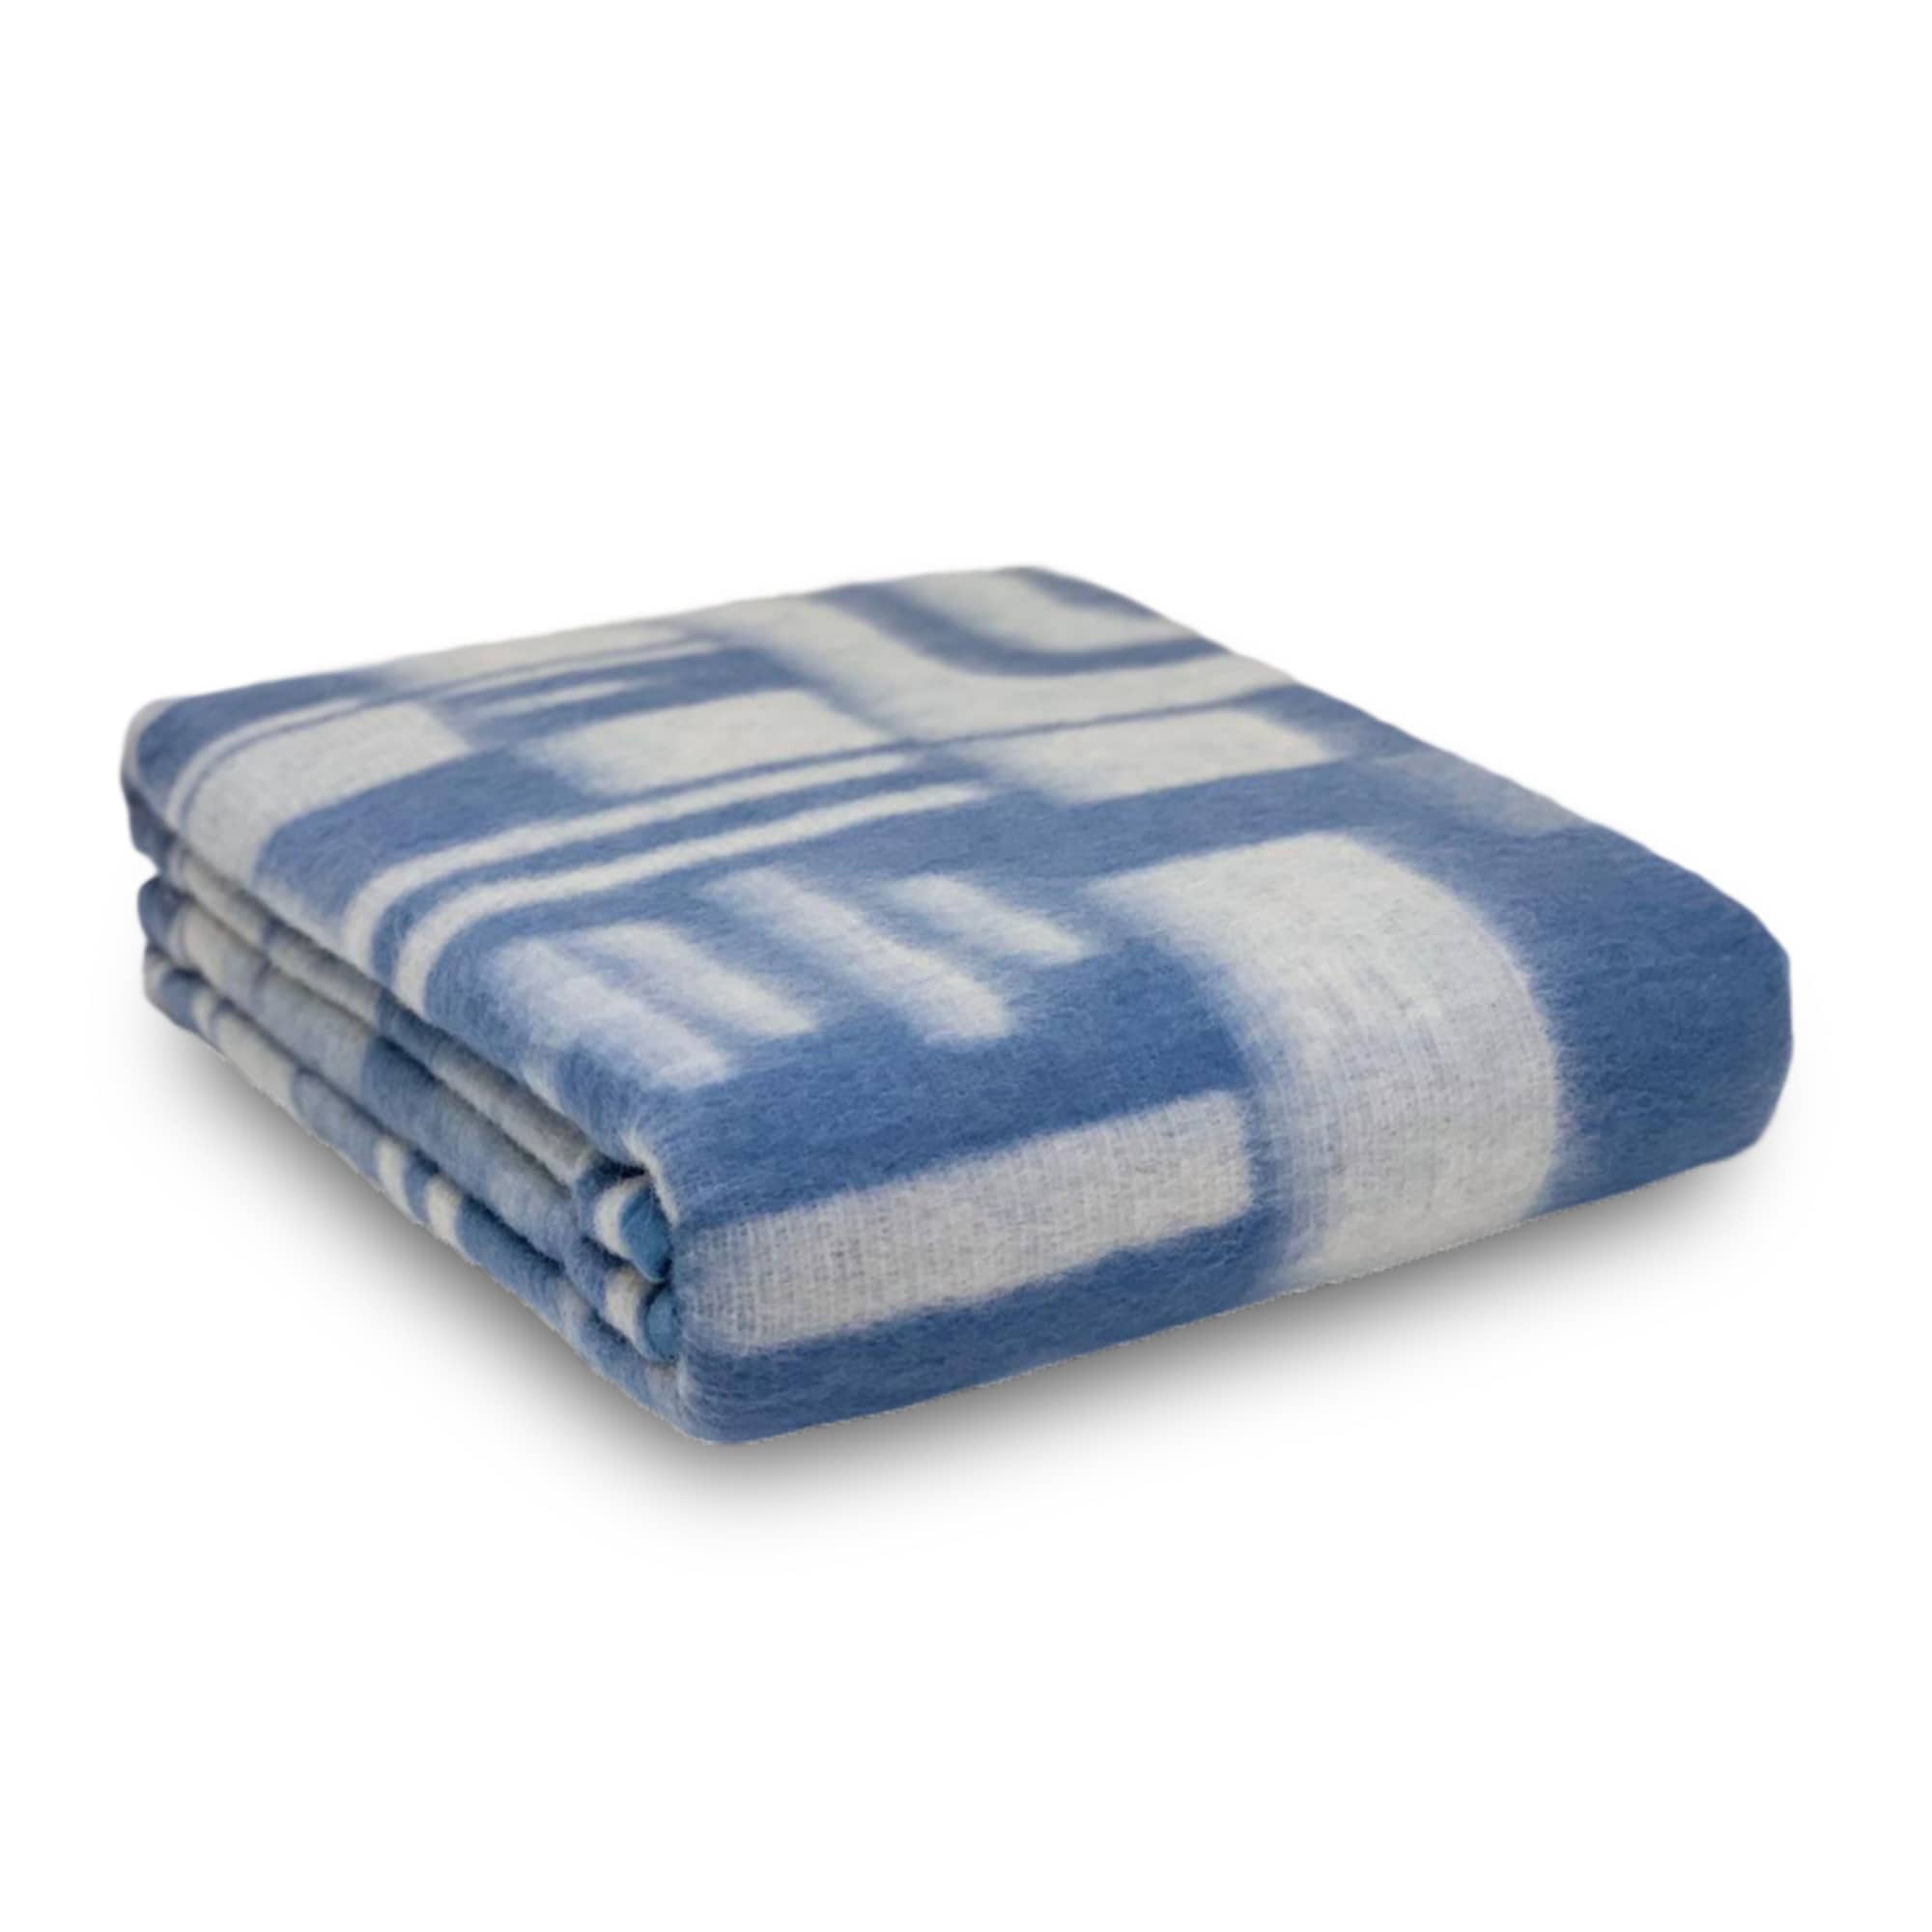 Coperta invernale in misto lana Boston Blankets singola letto 1 piazza 3643